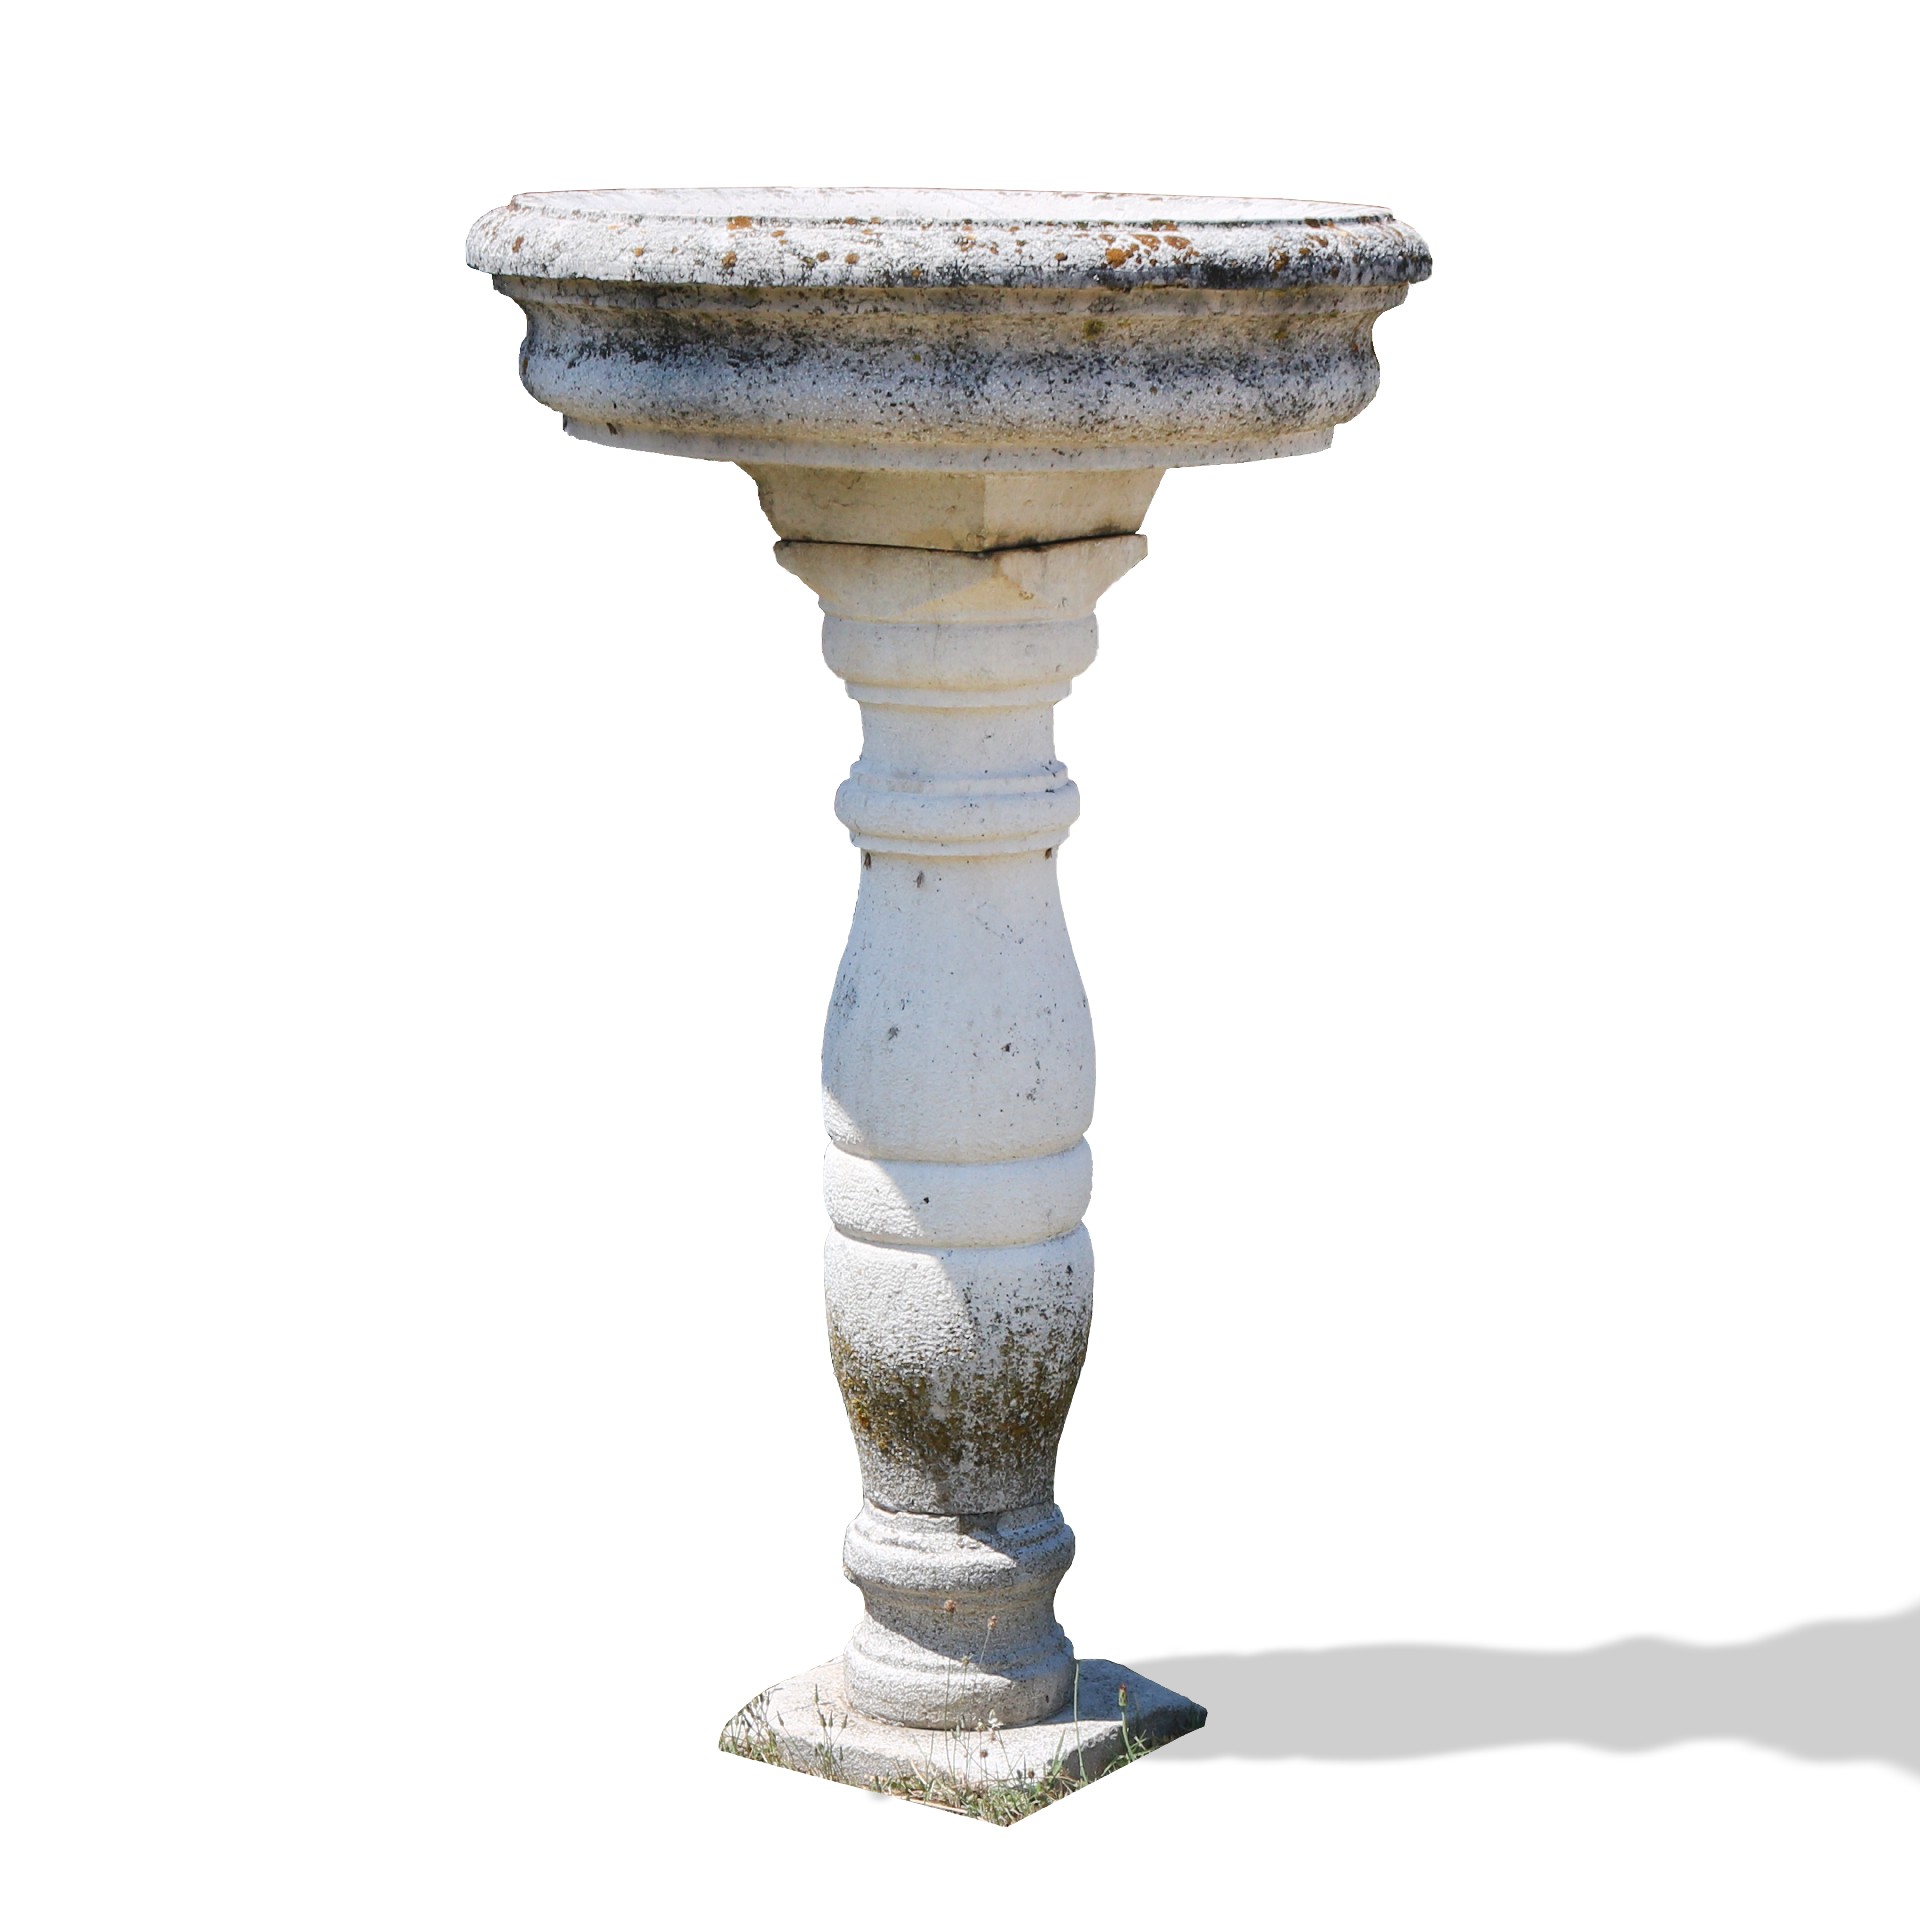 Fontana antica in pietra. Epoca 1800. - Fontane Antiche - Arredo Giardino - Prodotti - Antichità Fiorillo